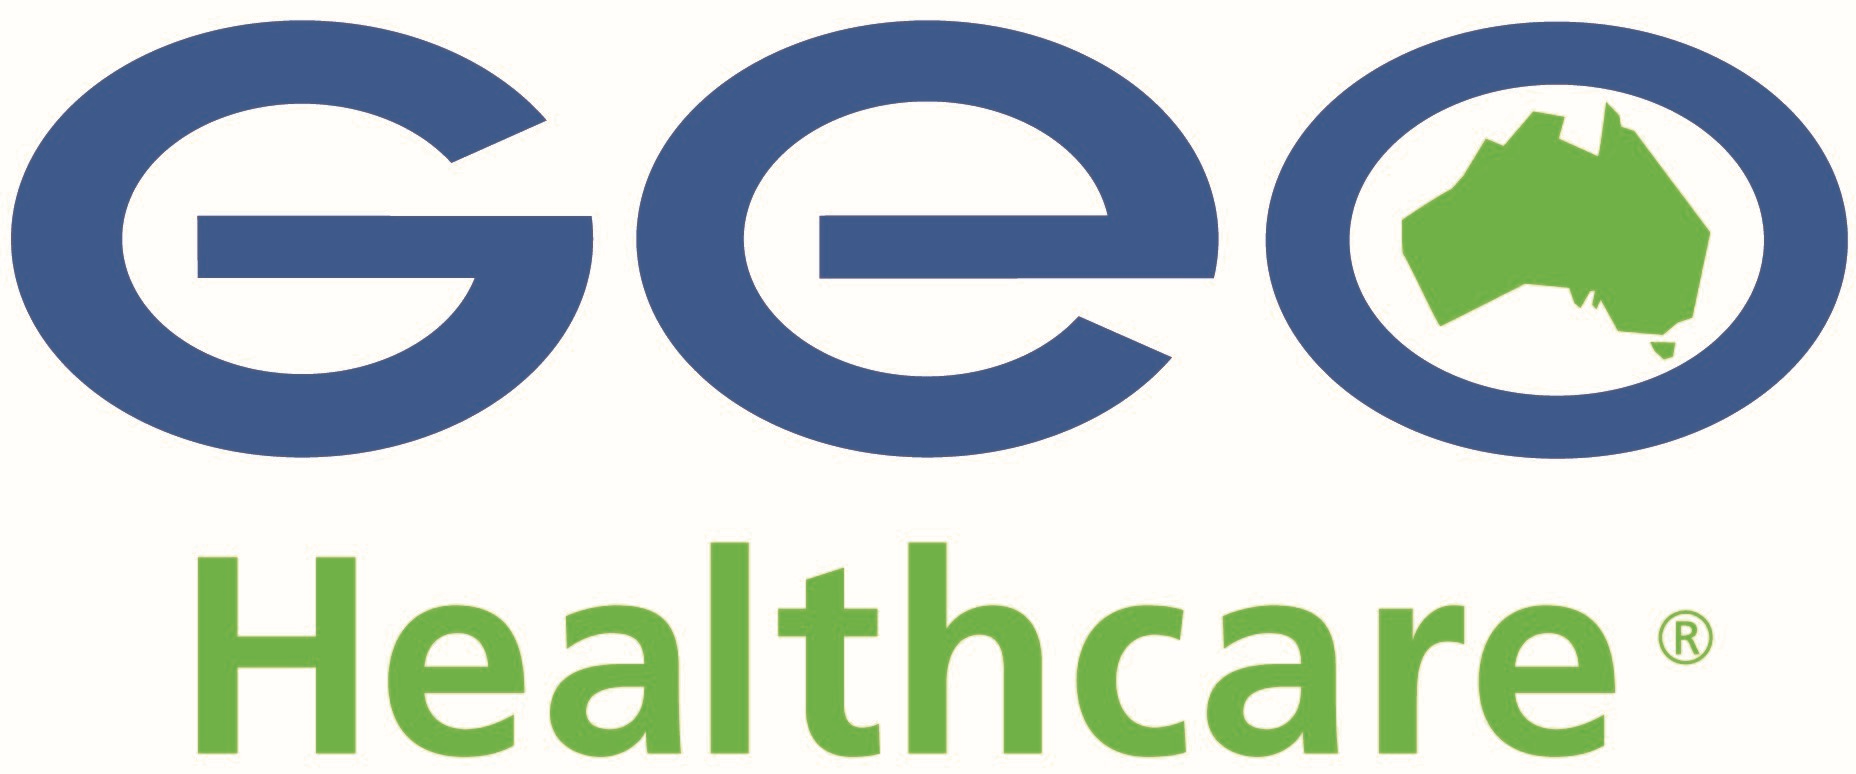 GEO Healthcare Logo